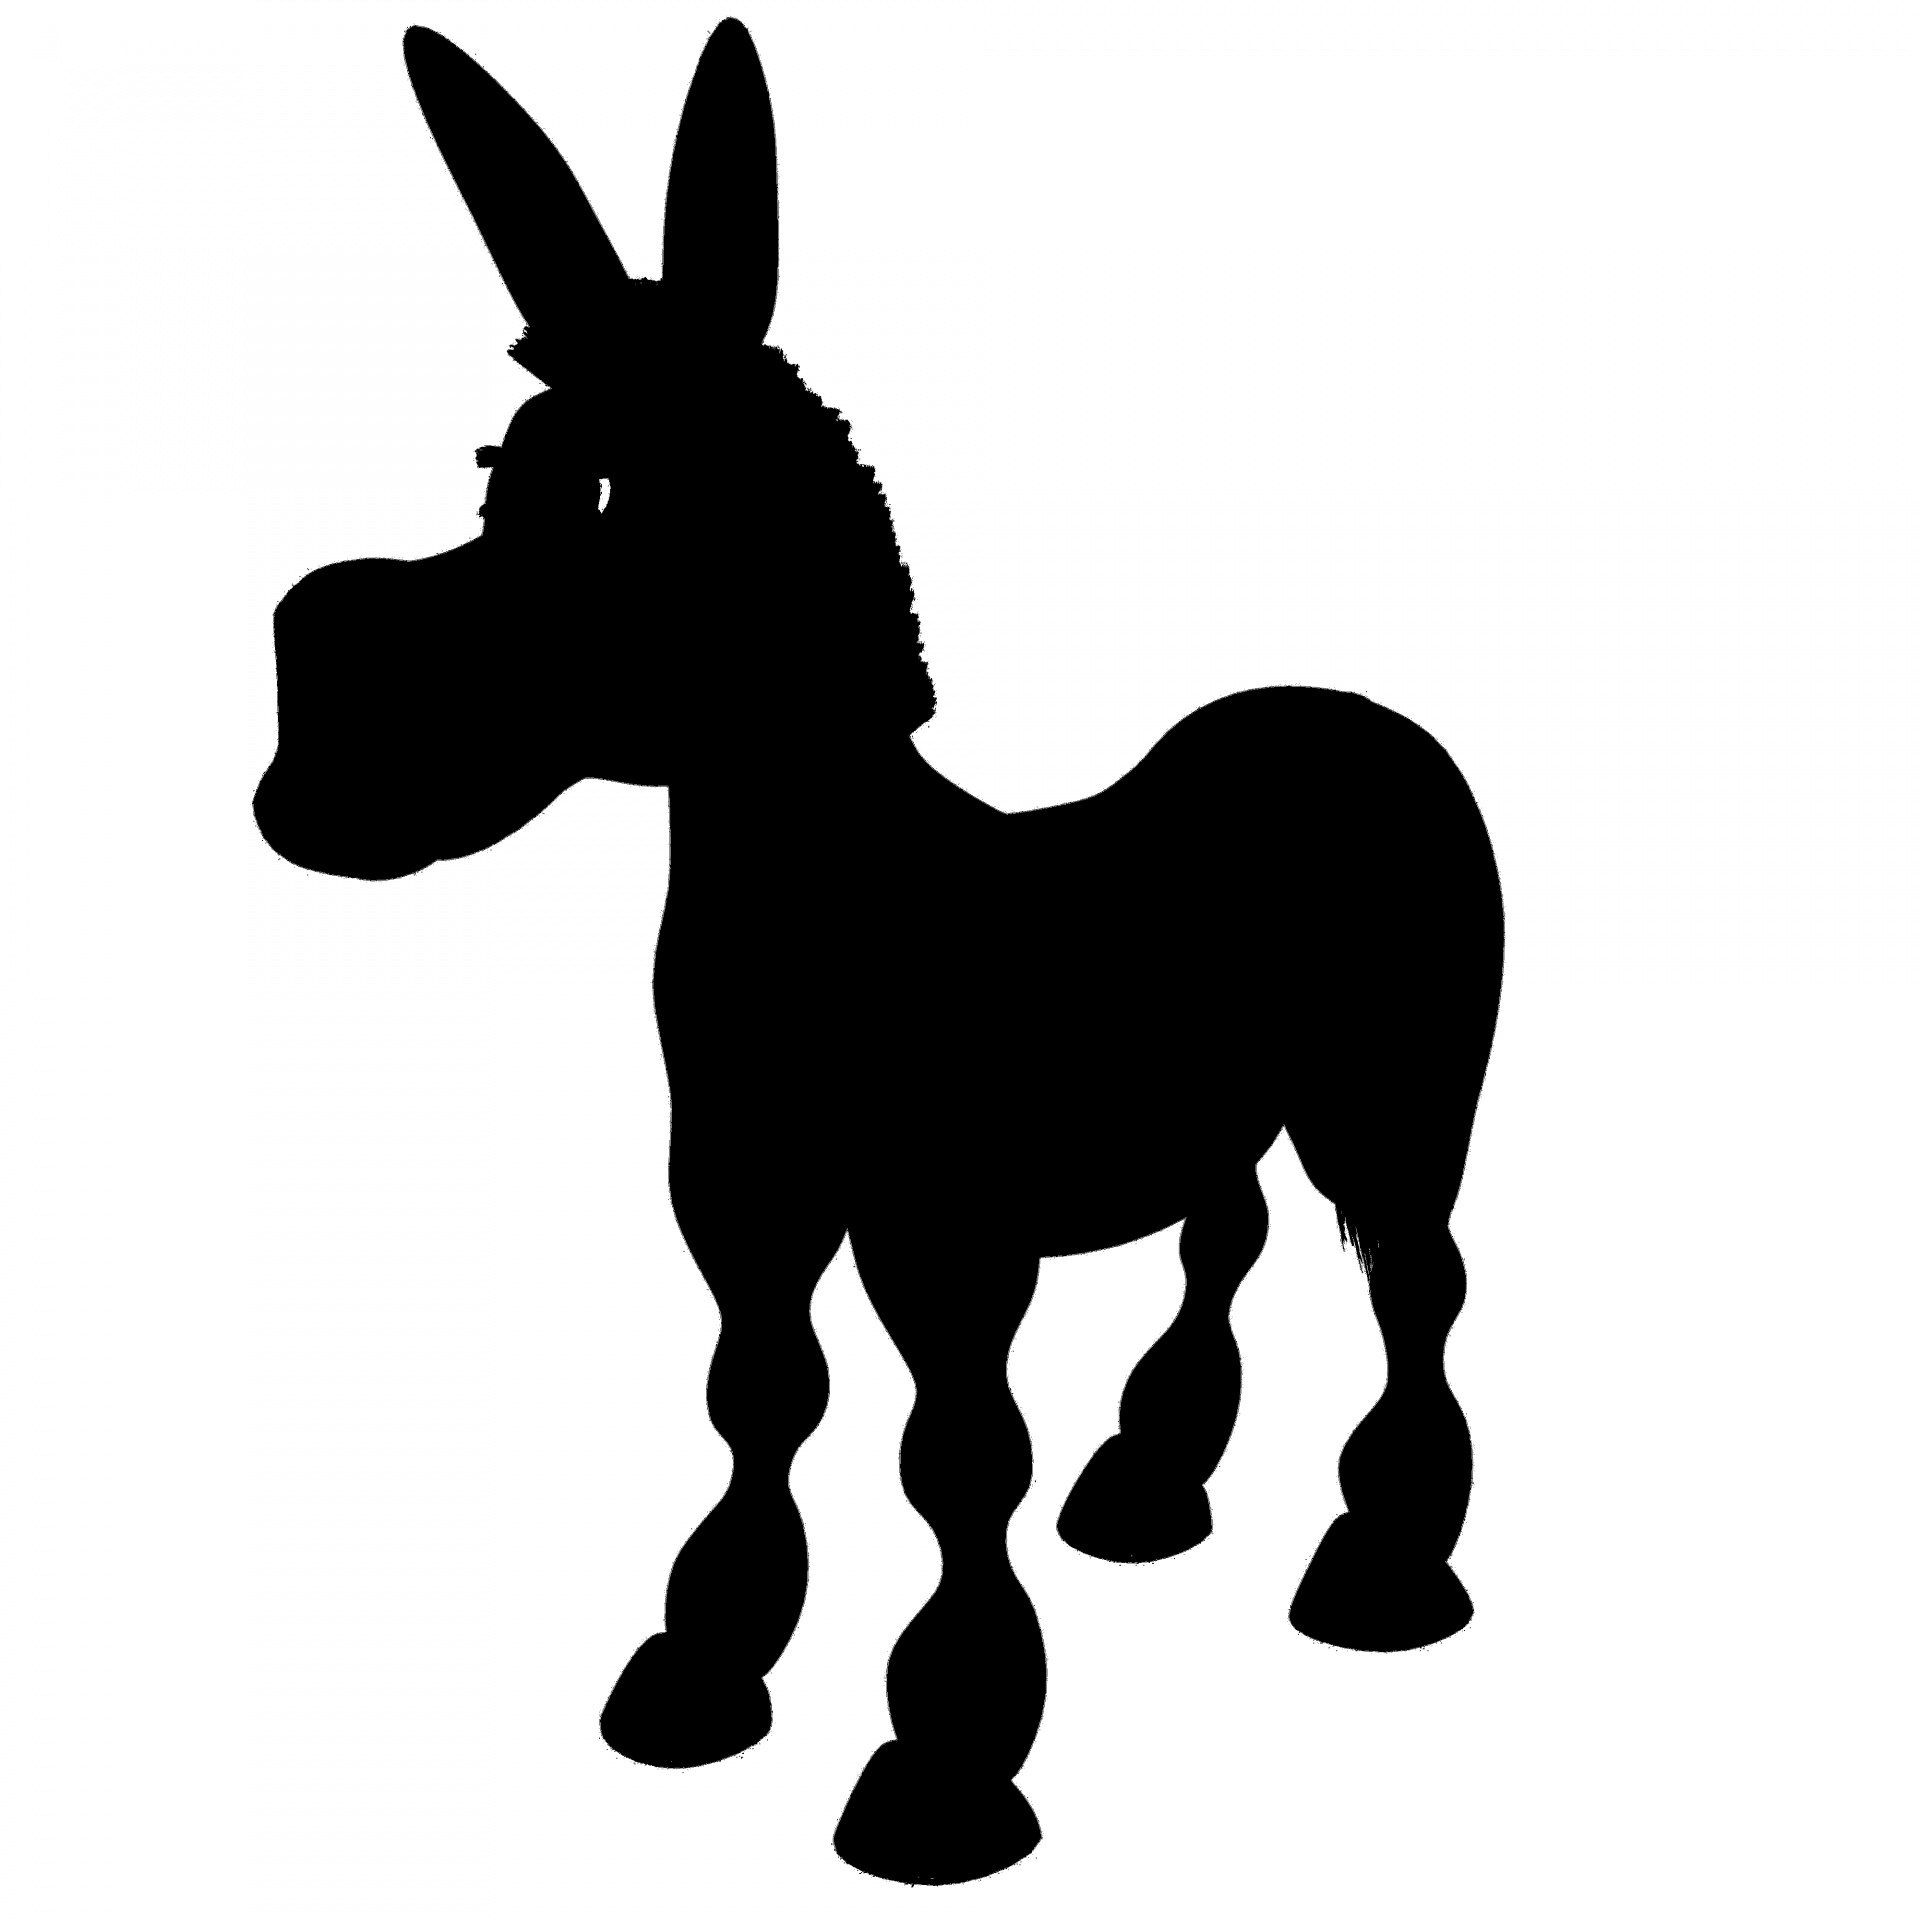 Donkey clipart shrek silhouette, Donkey shrek silhouette Transparent